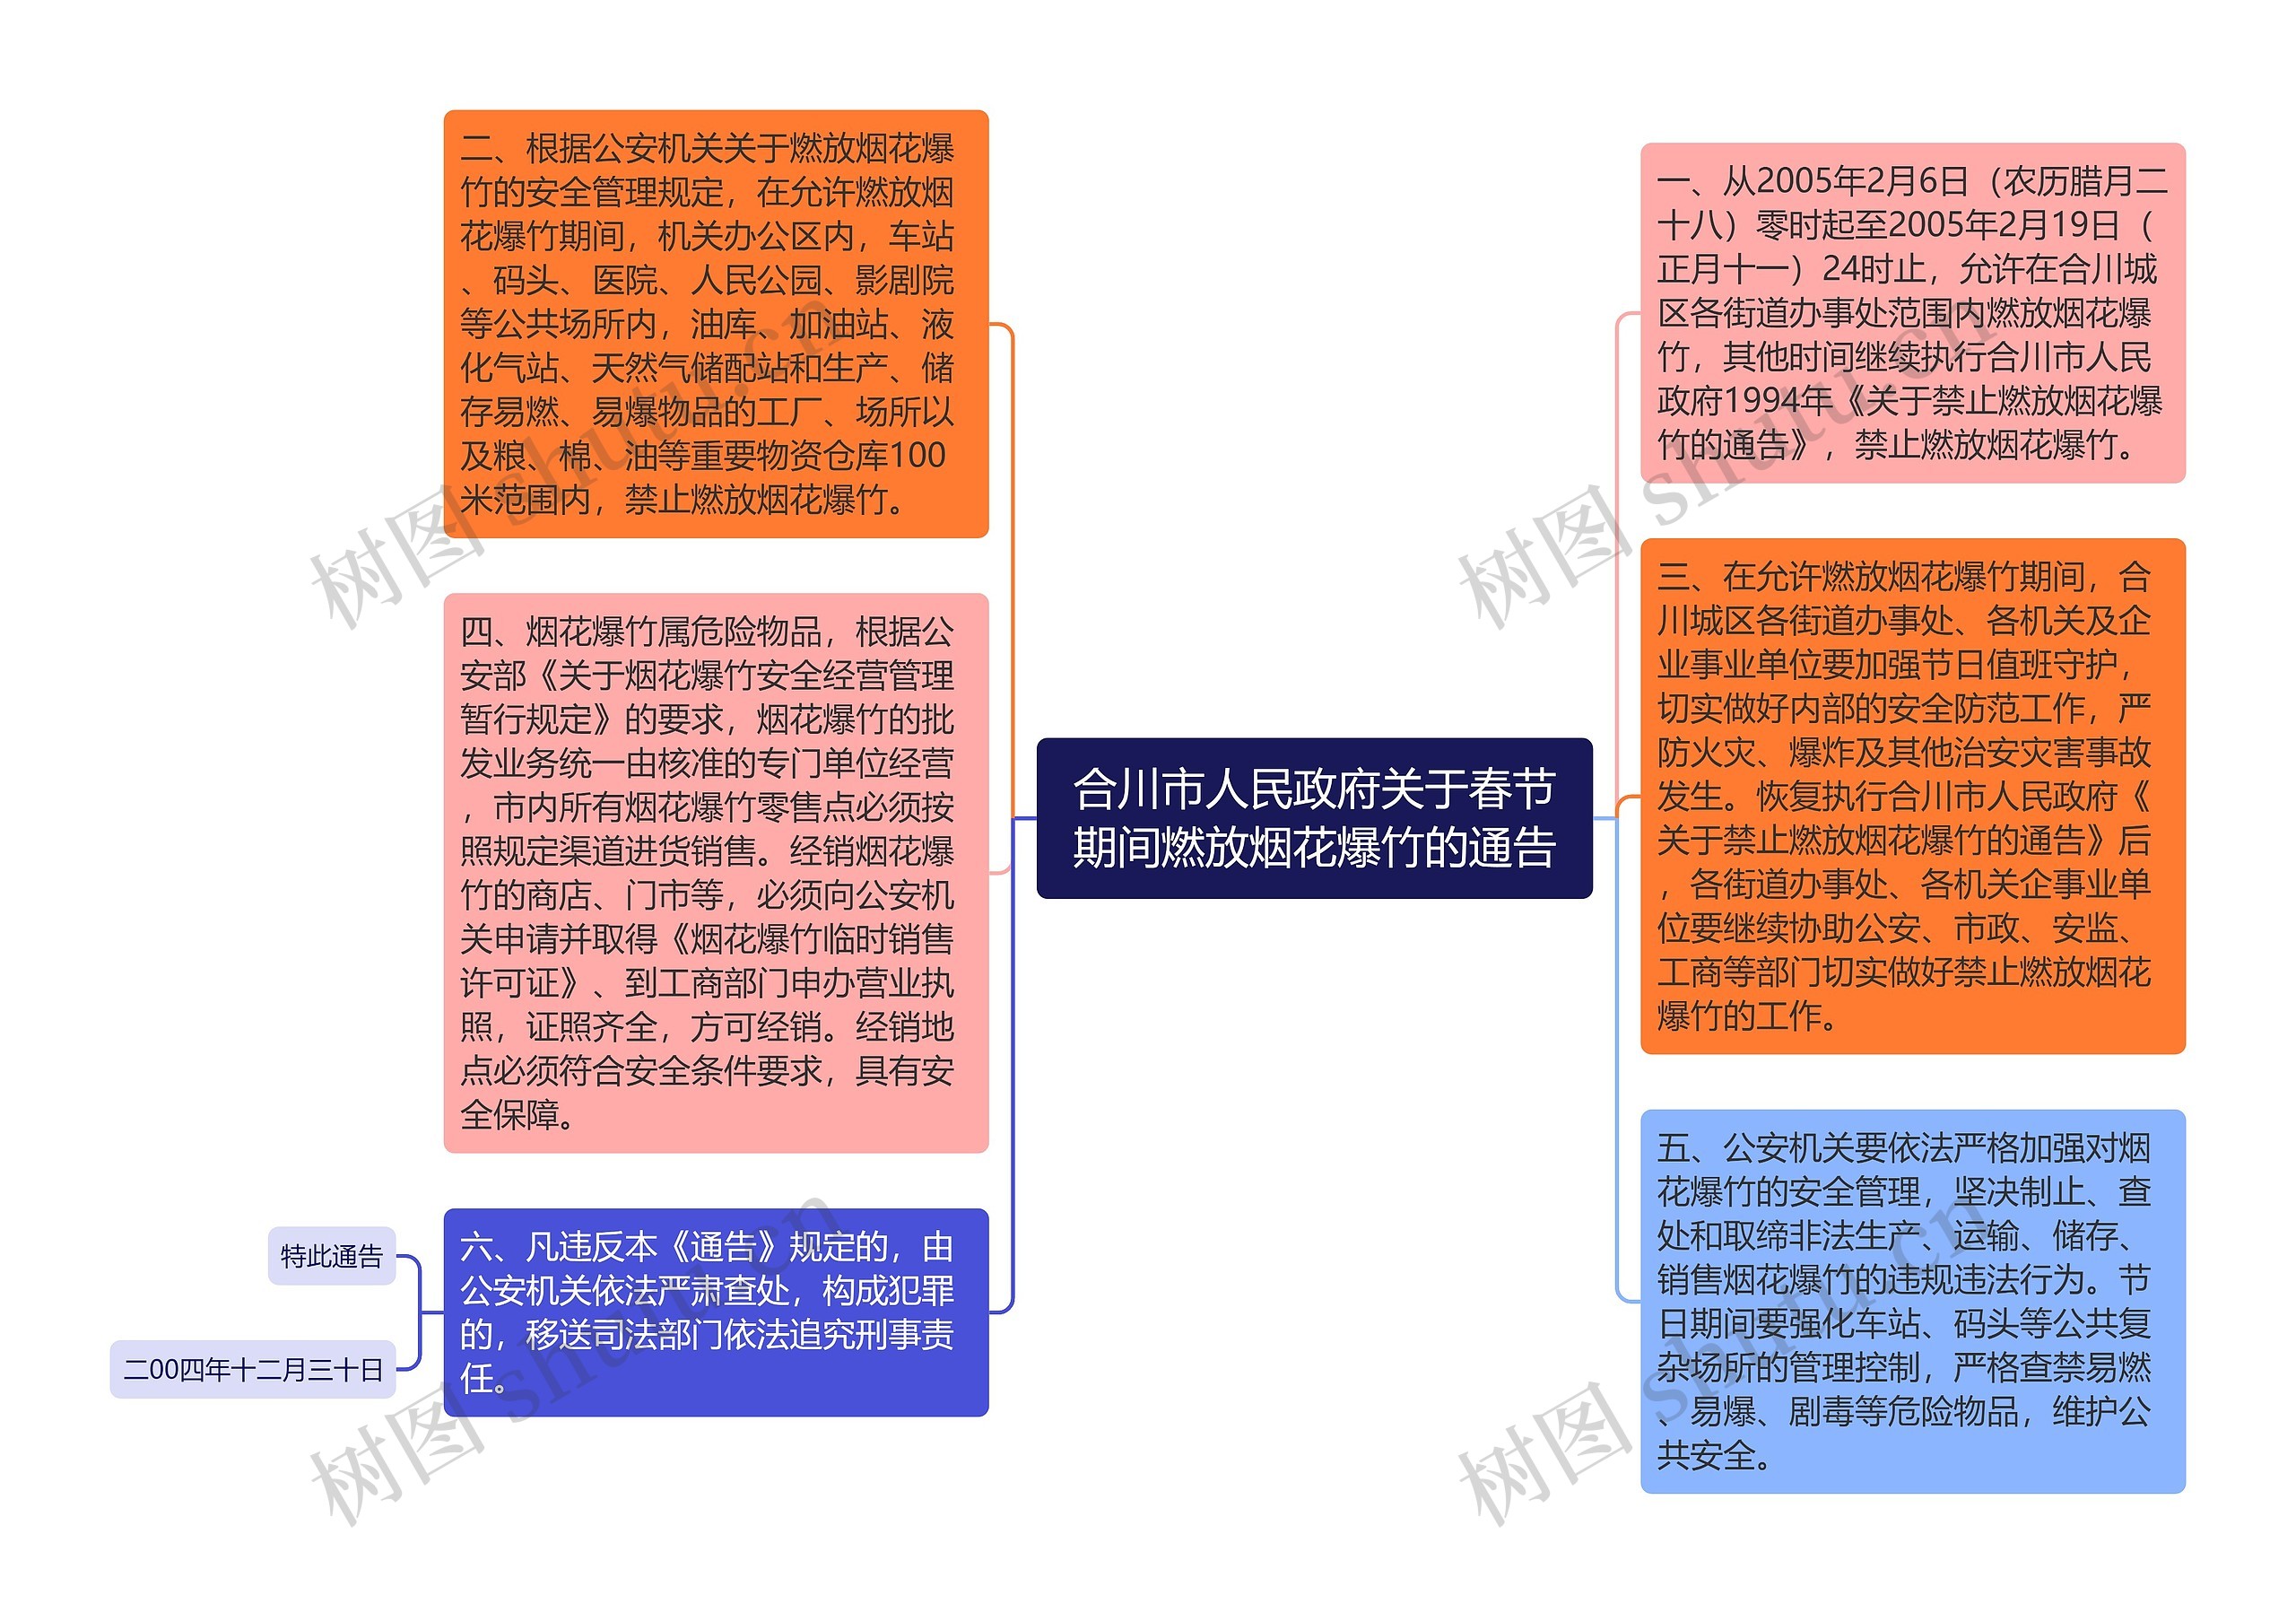 合川市人民政府关于春节期间燃放烟花爆竹的通告思维导图